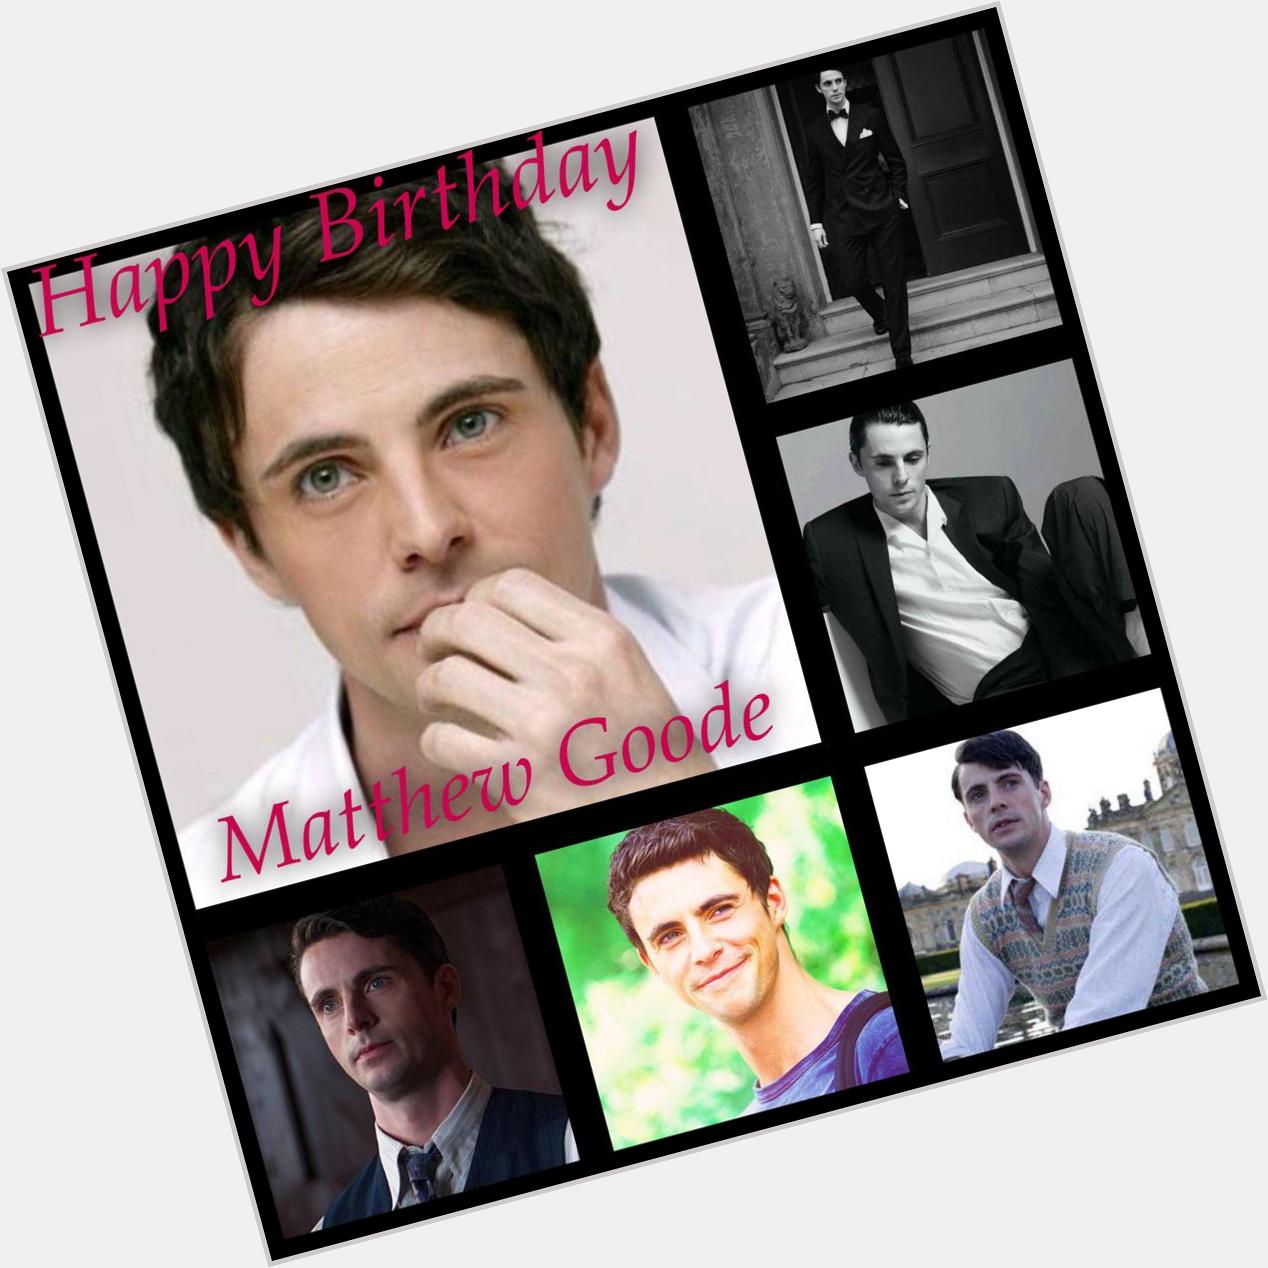    Happy Birthday      Happy Birthday      Happy Birthday   Matthew Goode 